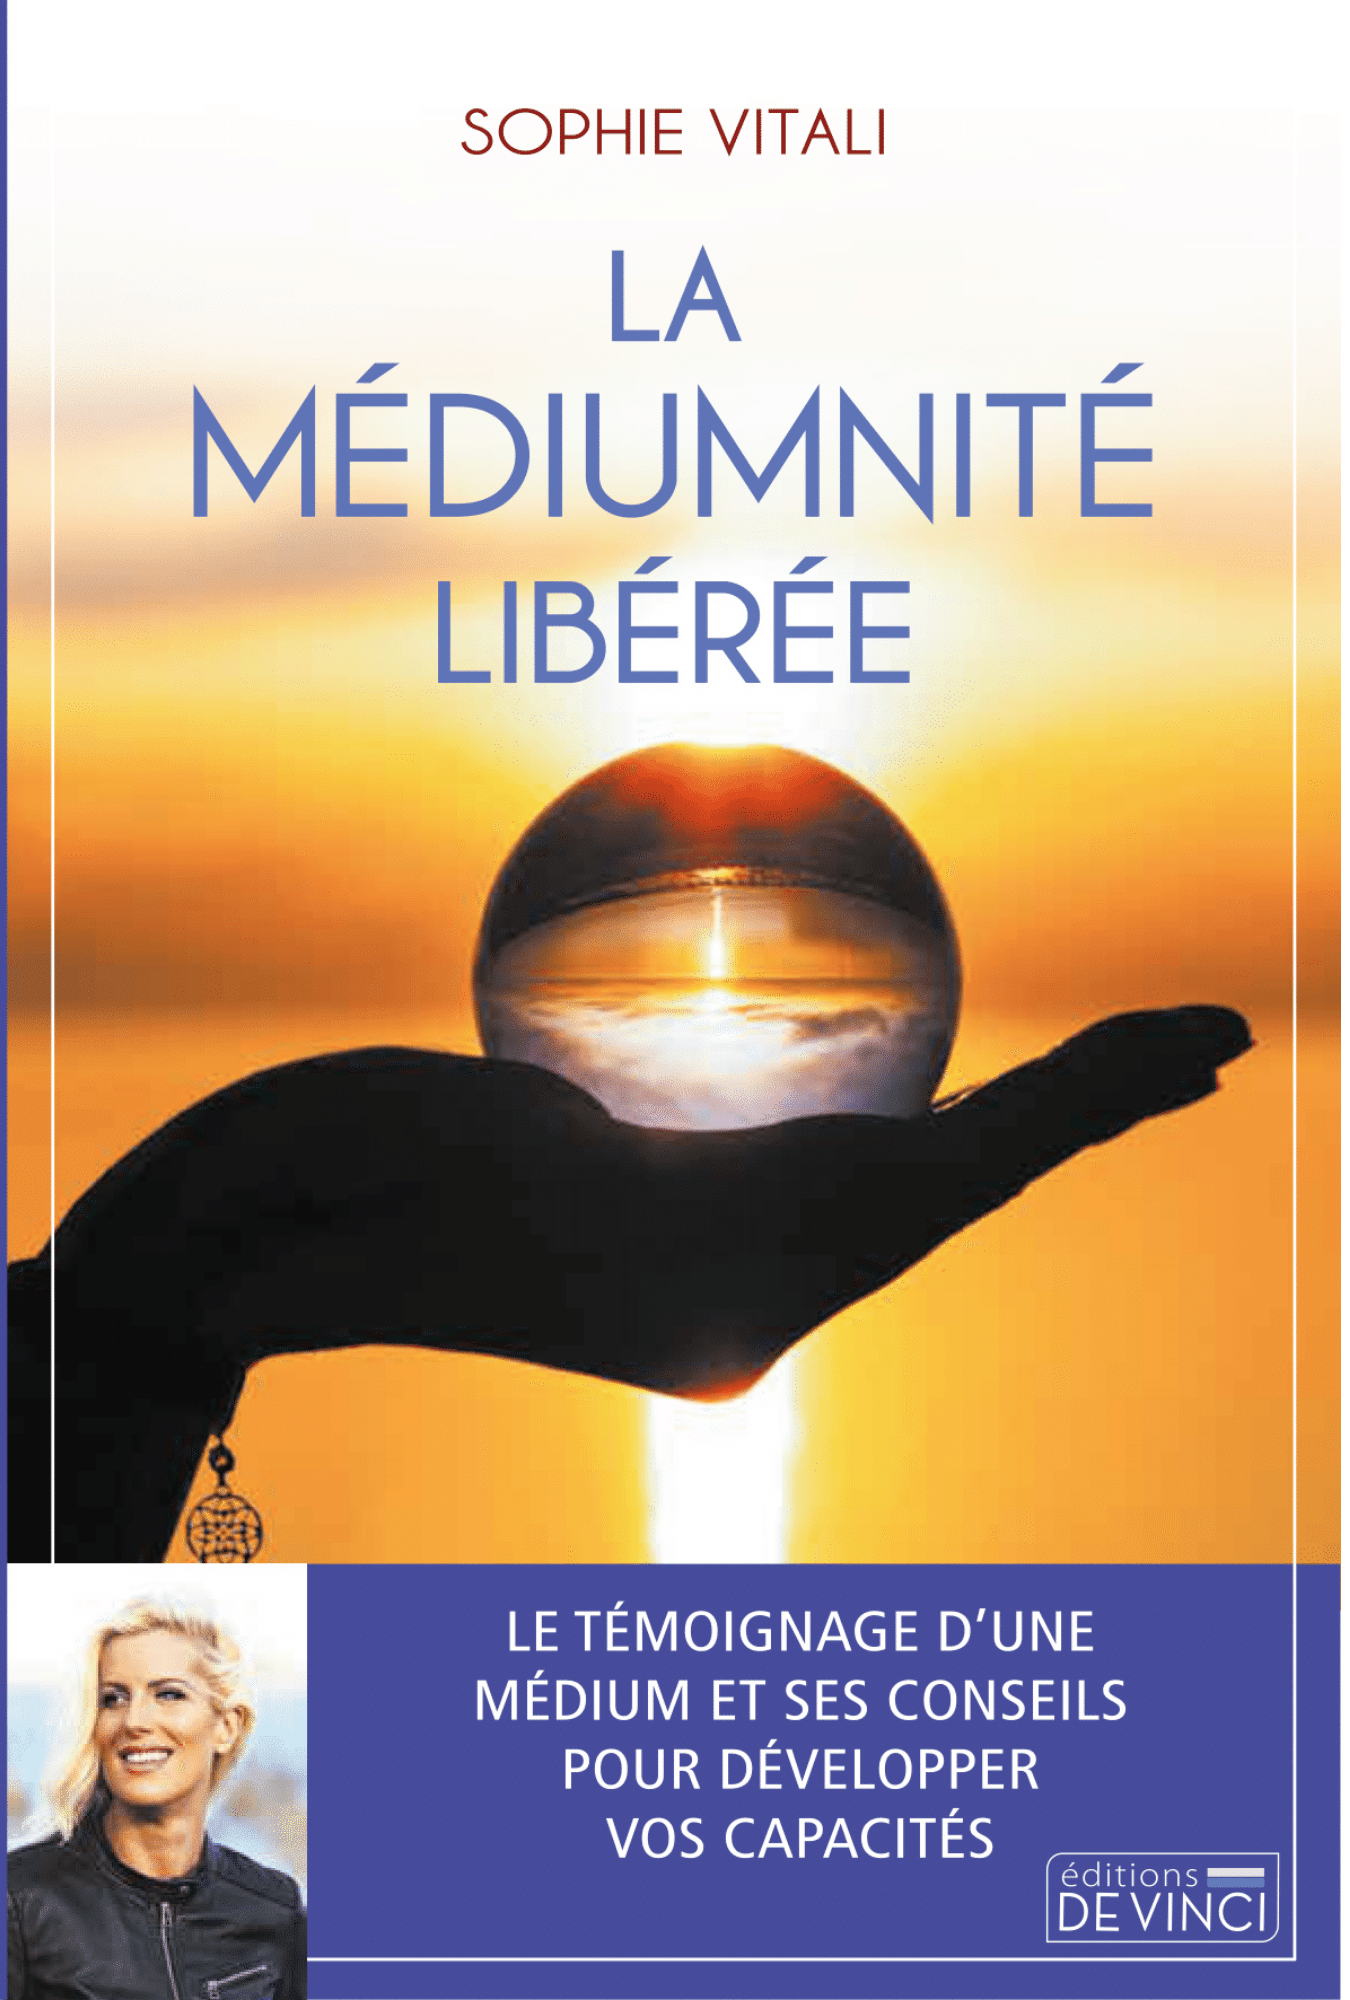 La médiumnité libérée, le livre de Sophie Vitali qui parle de voyance et de spiritualité paru aux éditions De Vinci